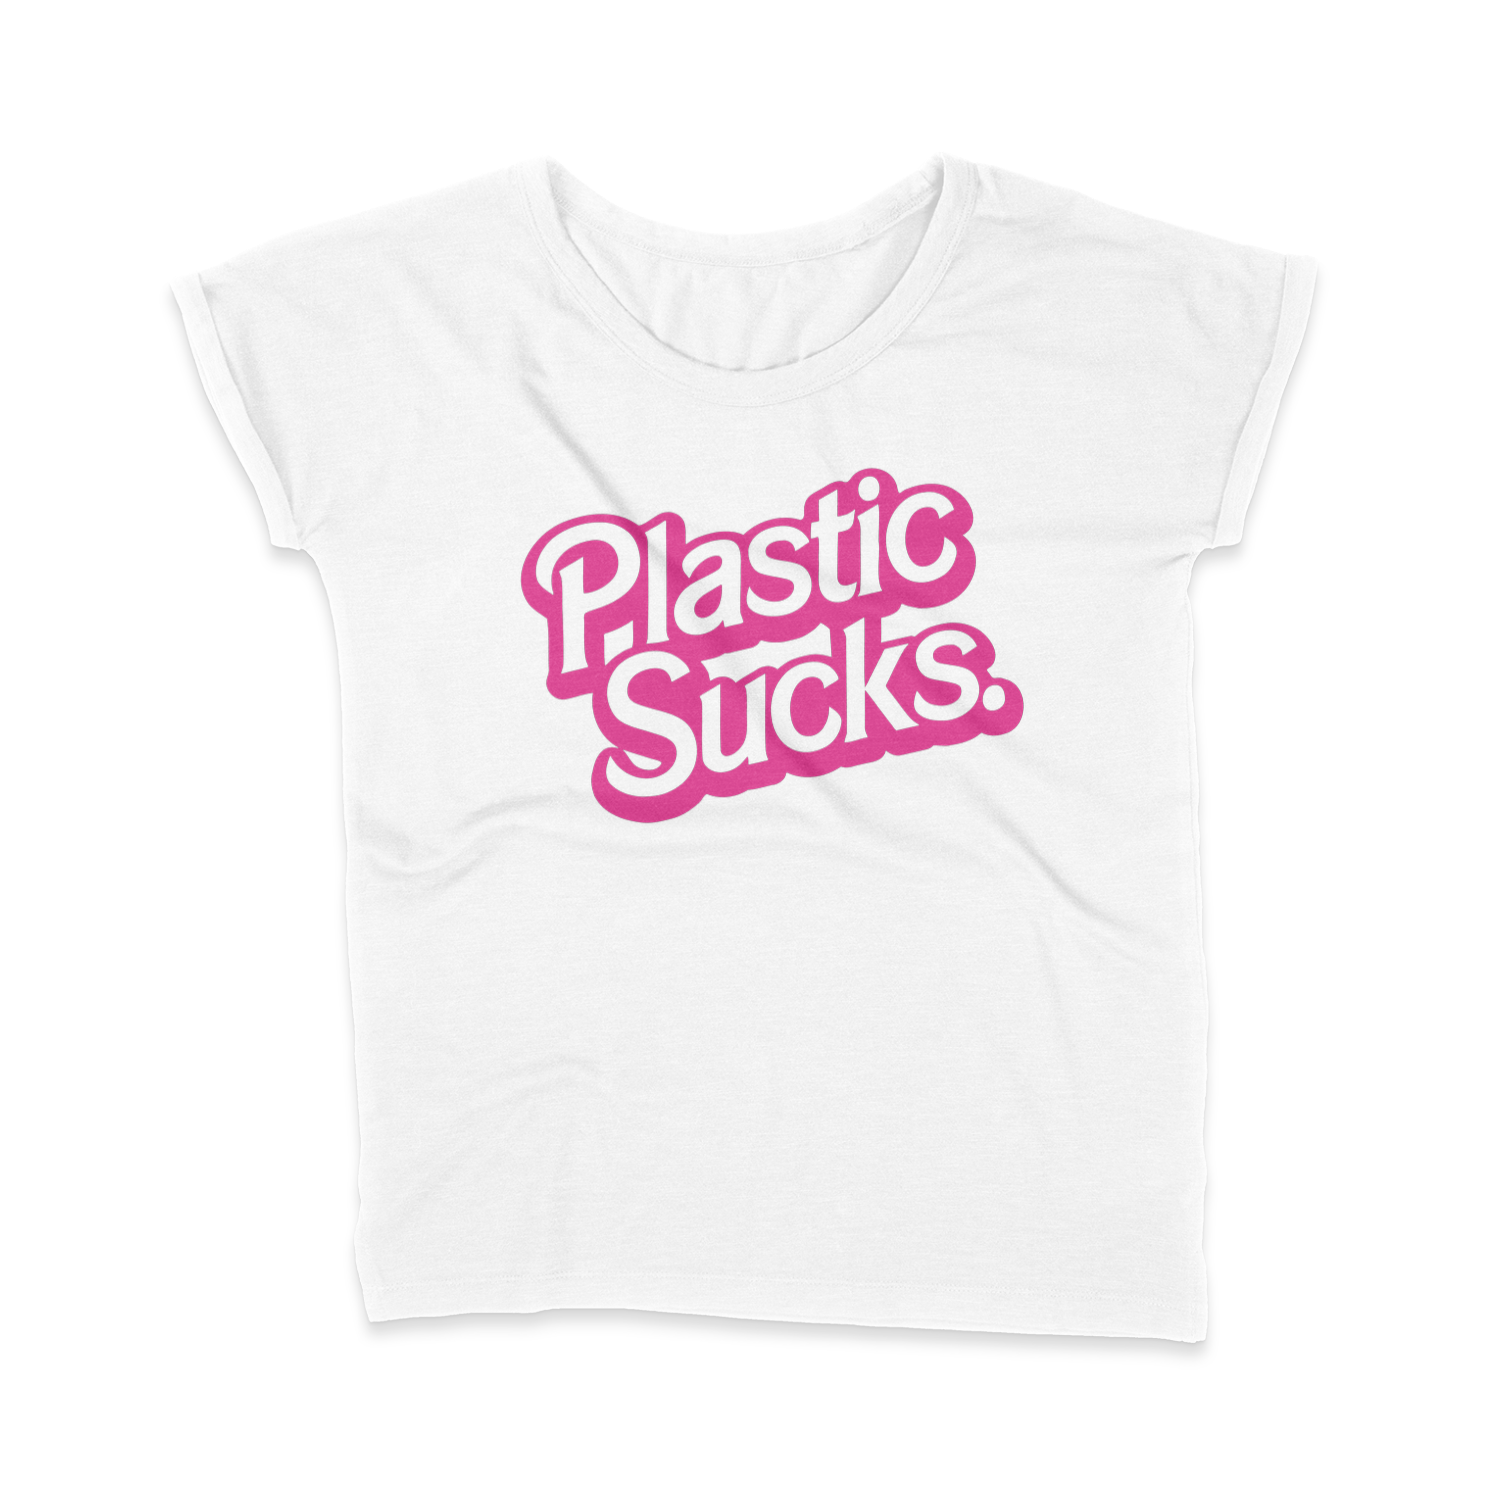 BARBIE plastic sucks t-shirt